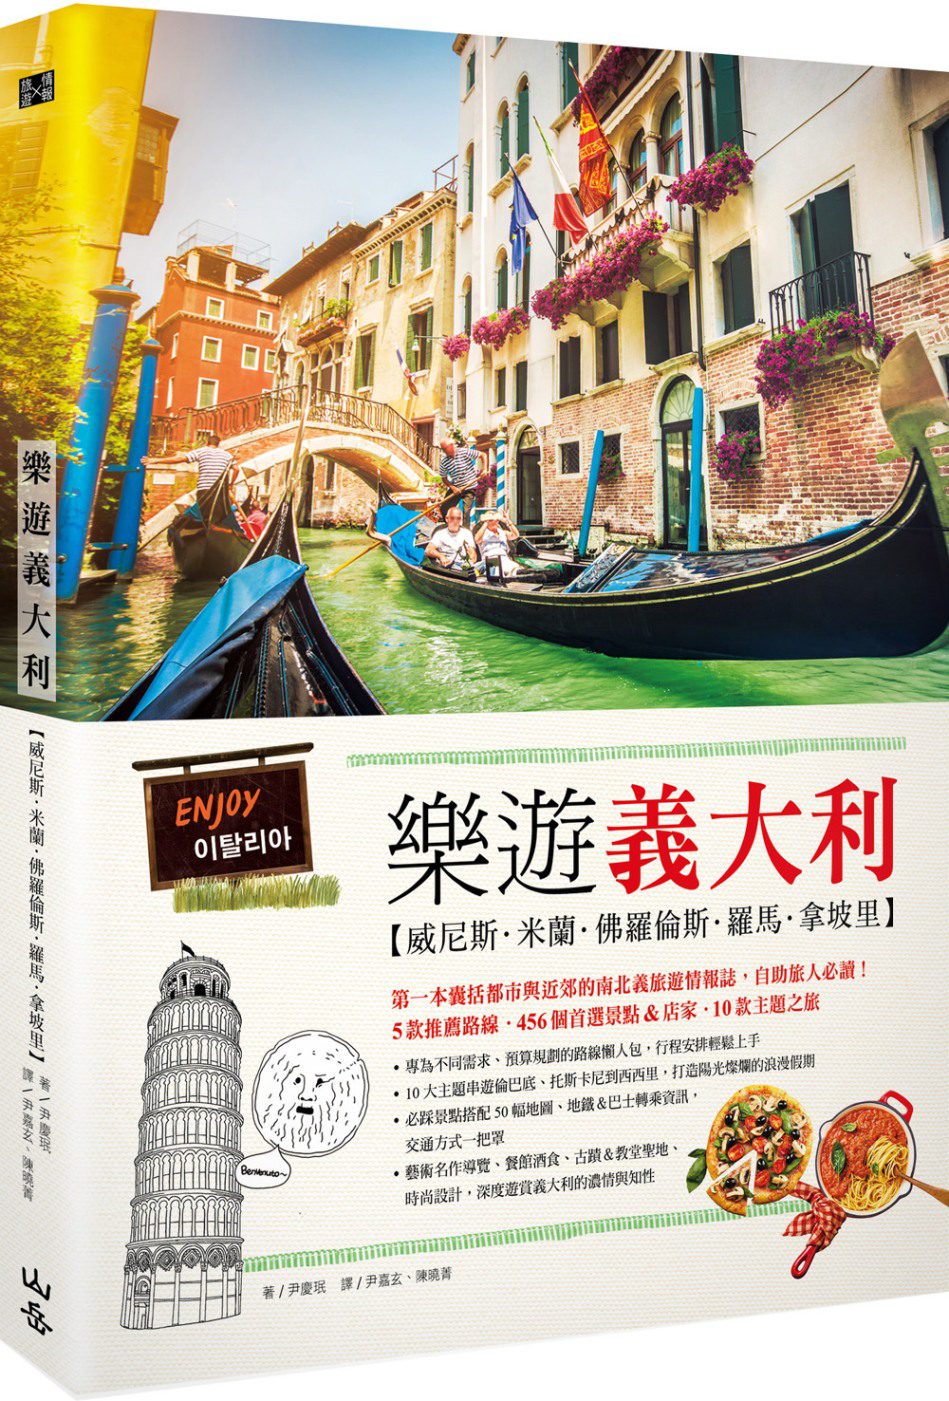 樂遊義大利：威尼斯、米蘭、佛羅倫斯、羅馬、拿坡里（隨書附贈實用地圖集＆英義語會話手冊）